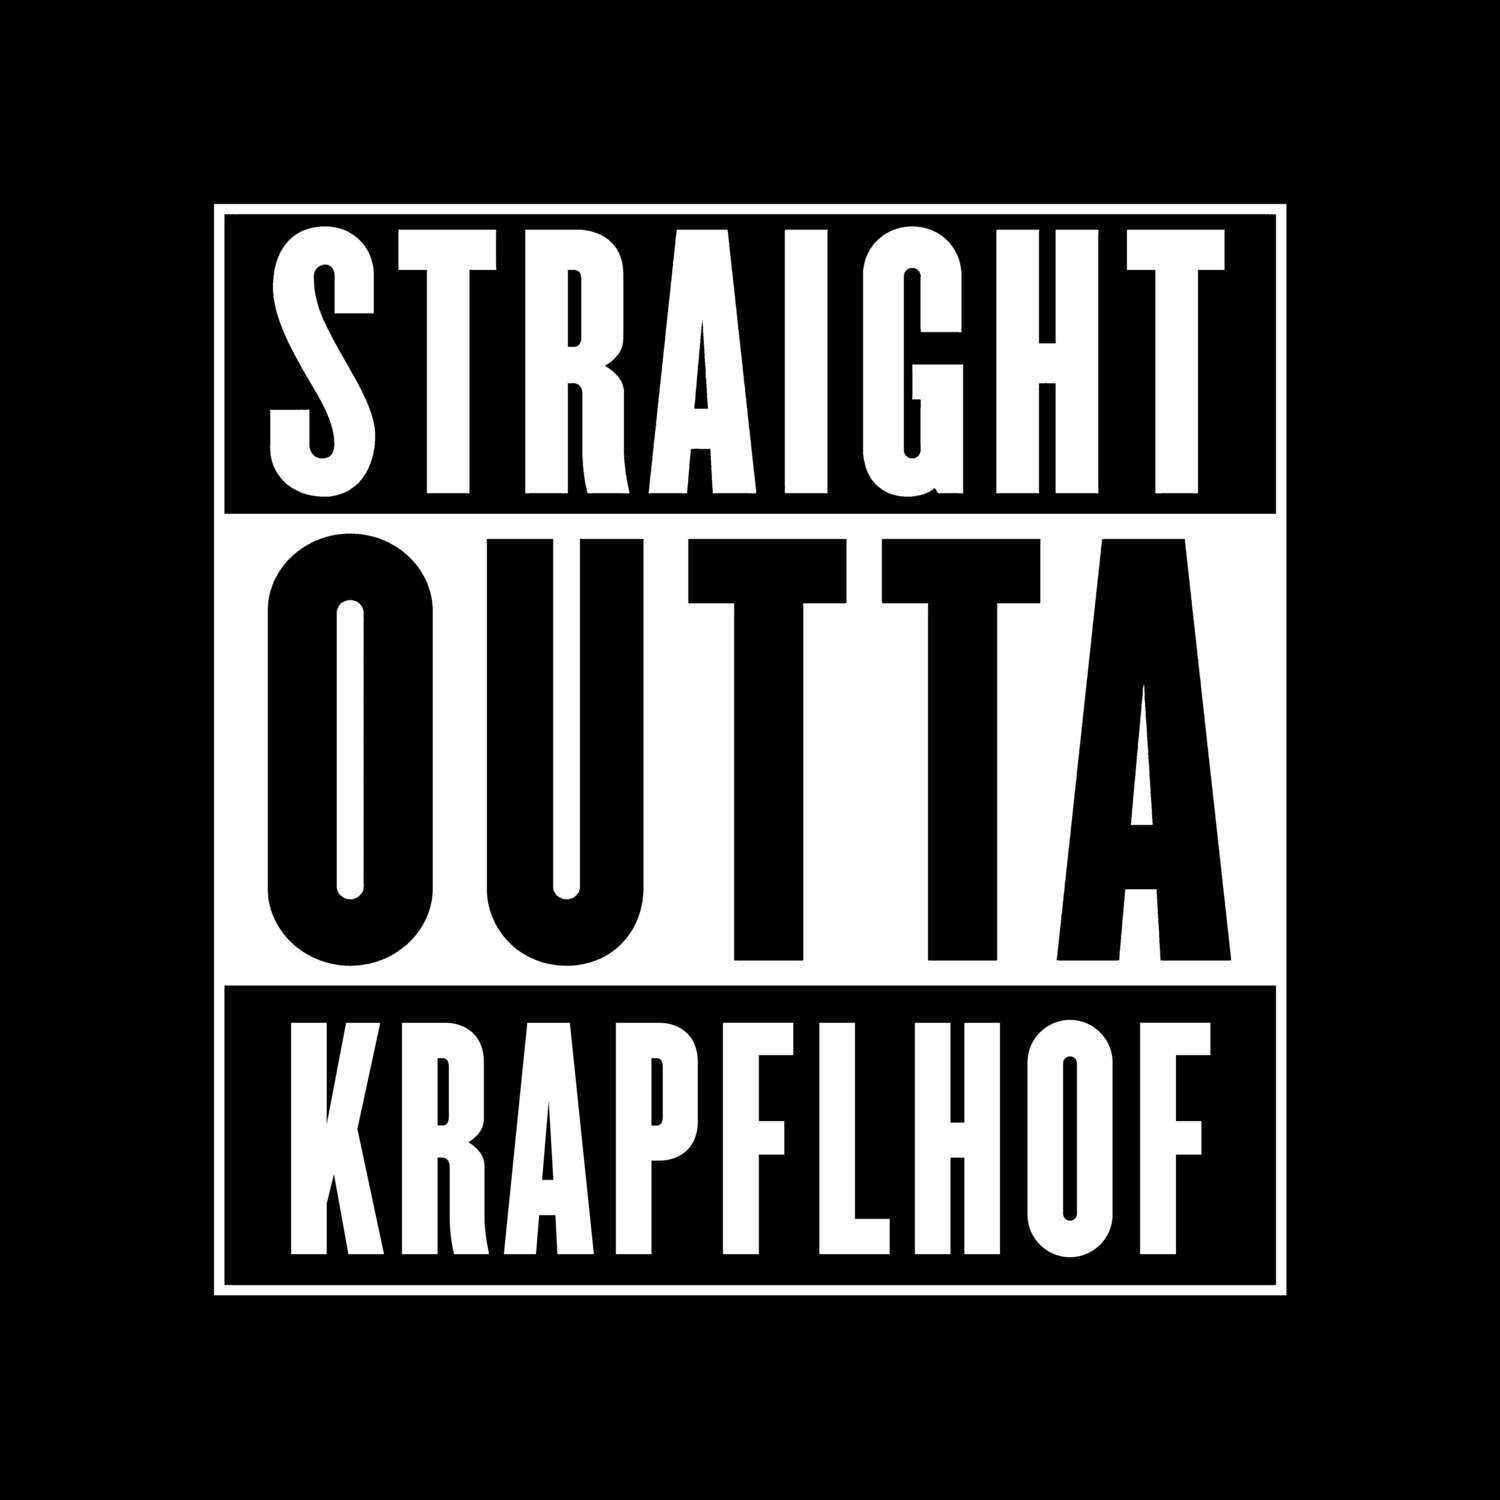 Krapflhof T-Shirt »Straight Outta«